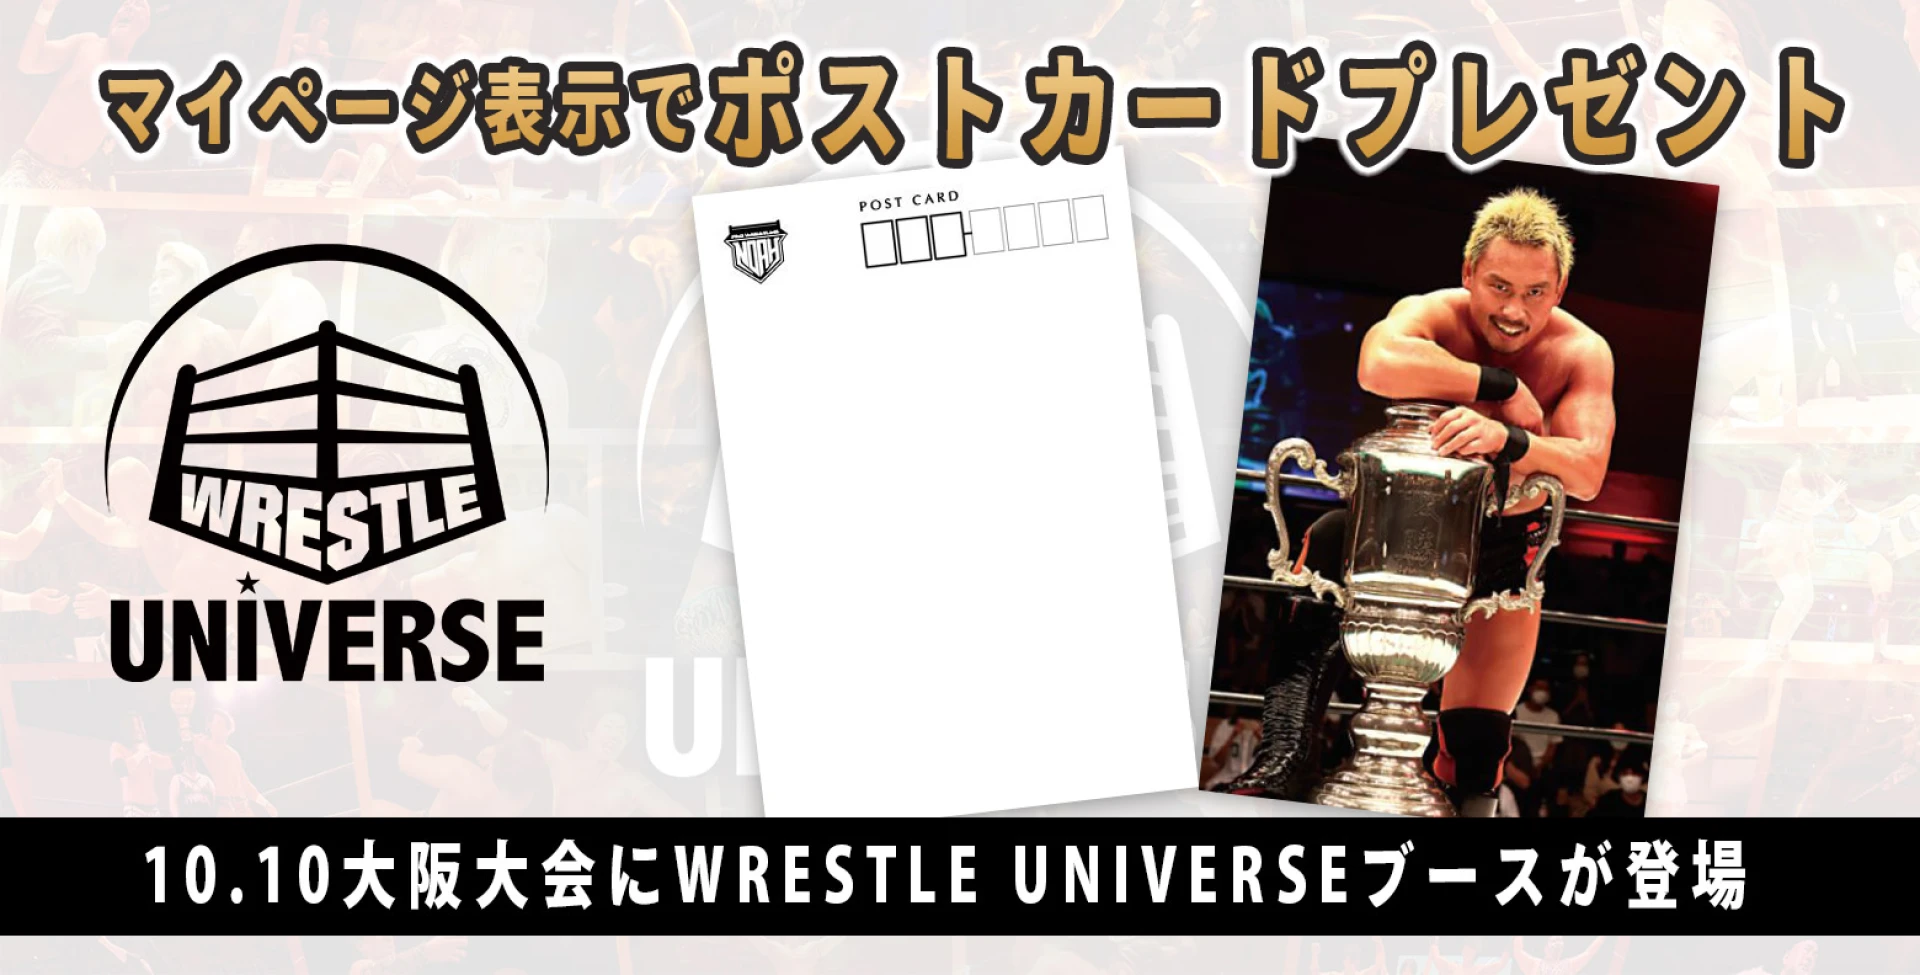 10.10大阪大会にWRESTLE UNIVERSEブースが登場！マイページ表示で中嶋勝彦選手ポストカードプレゼント！